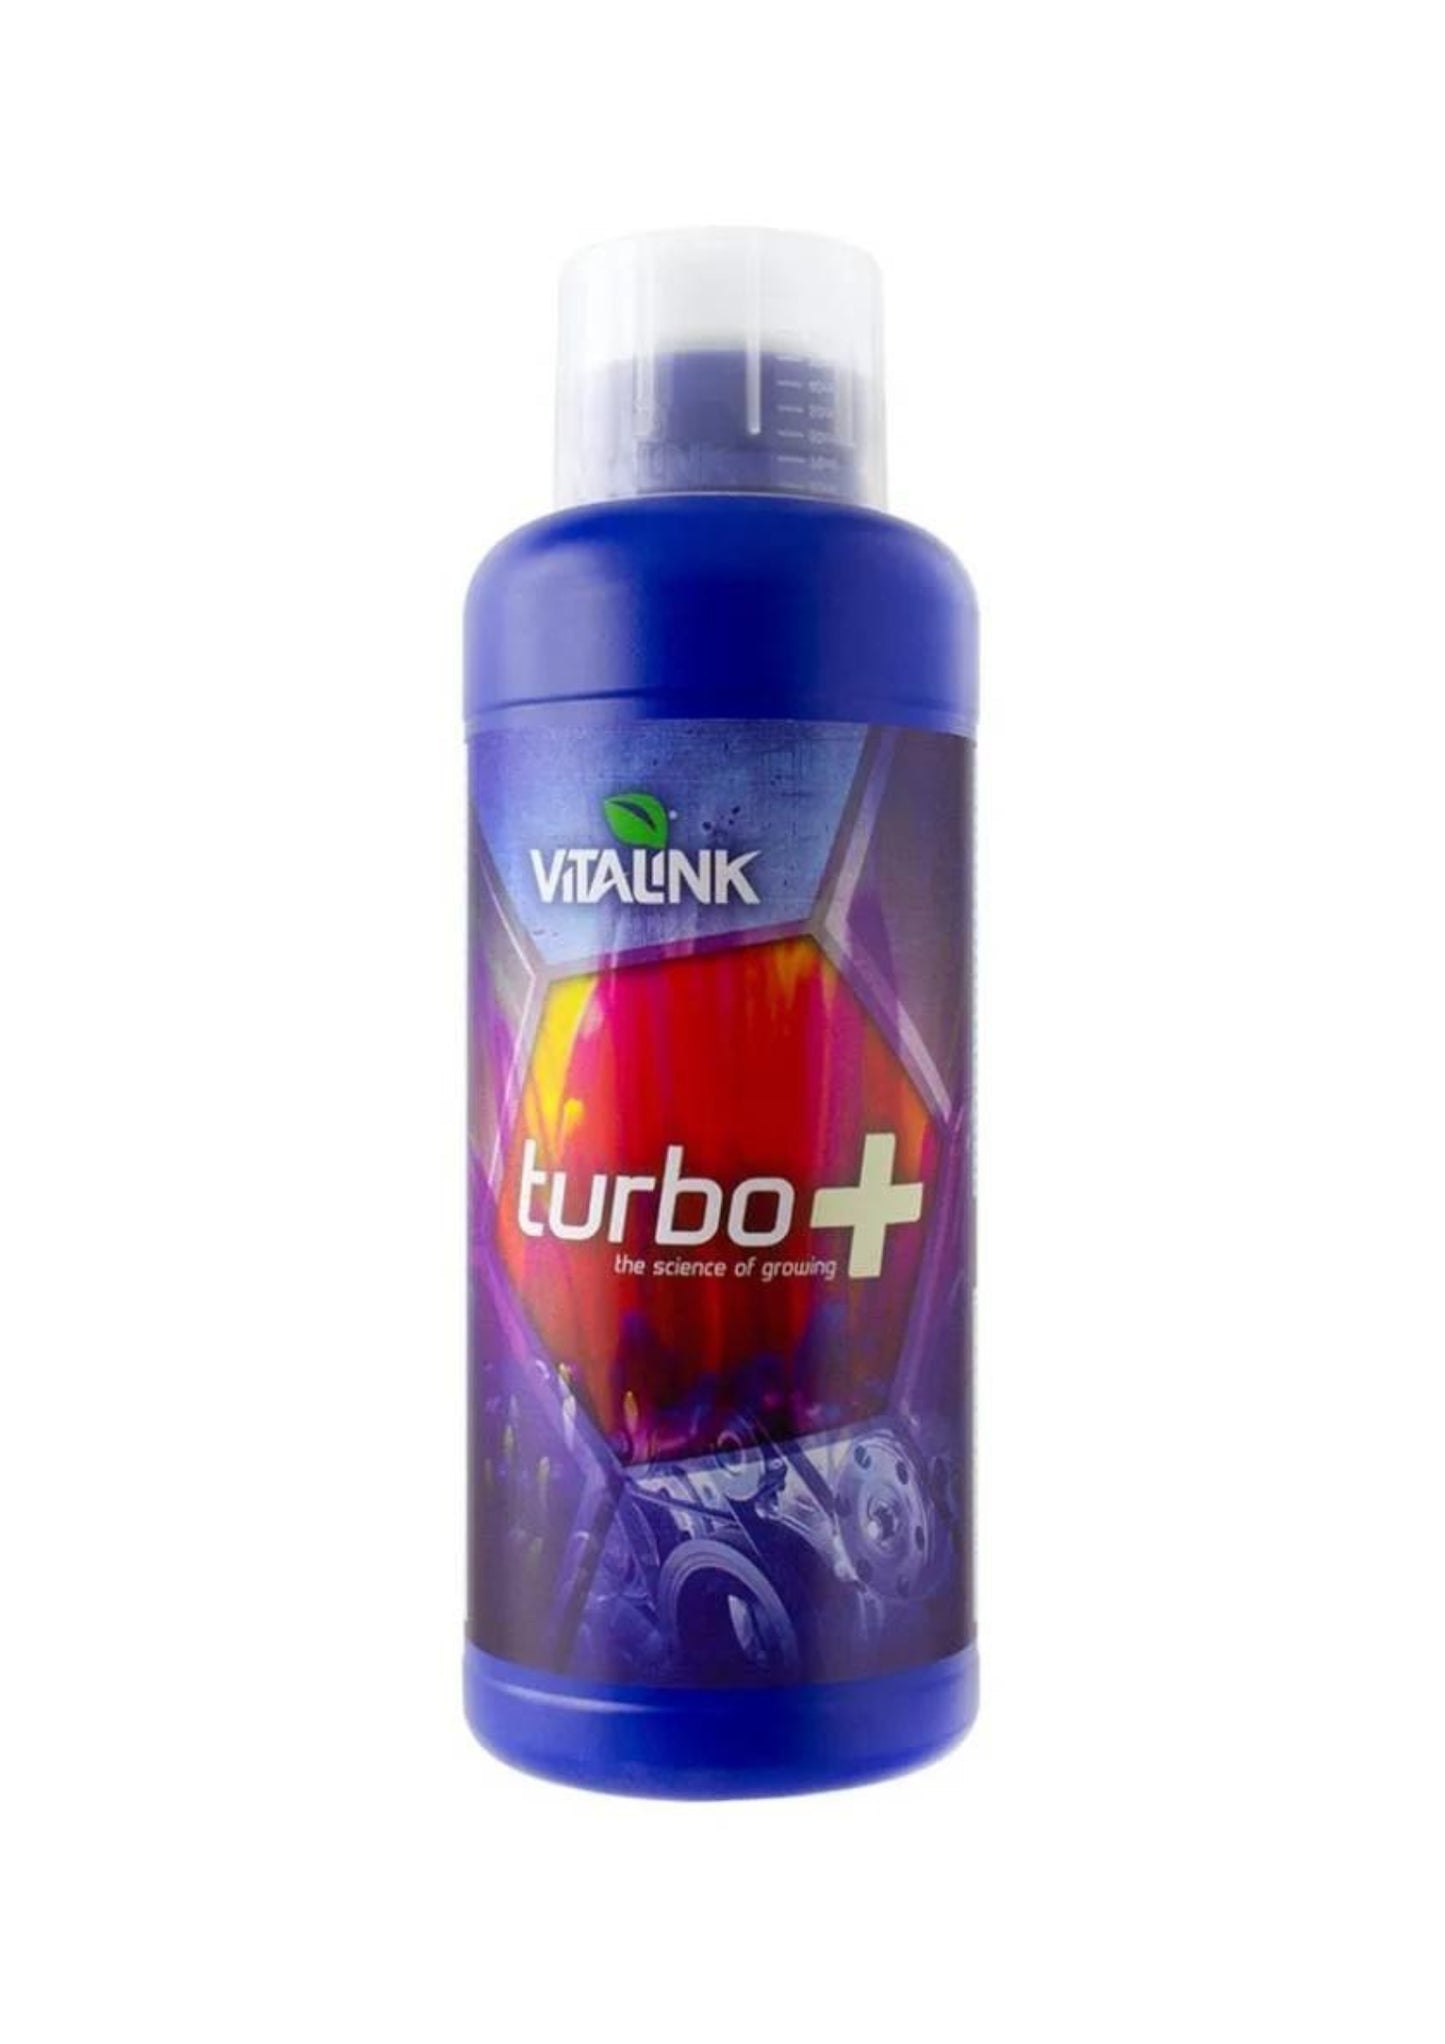 VitaLink Turbo +